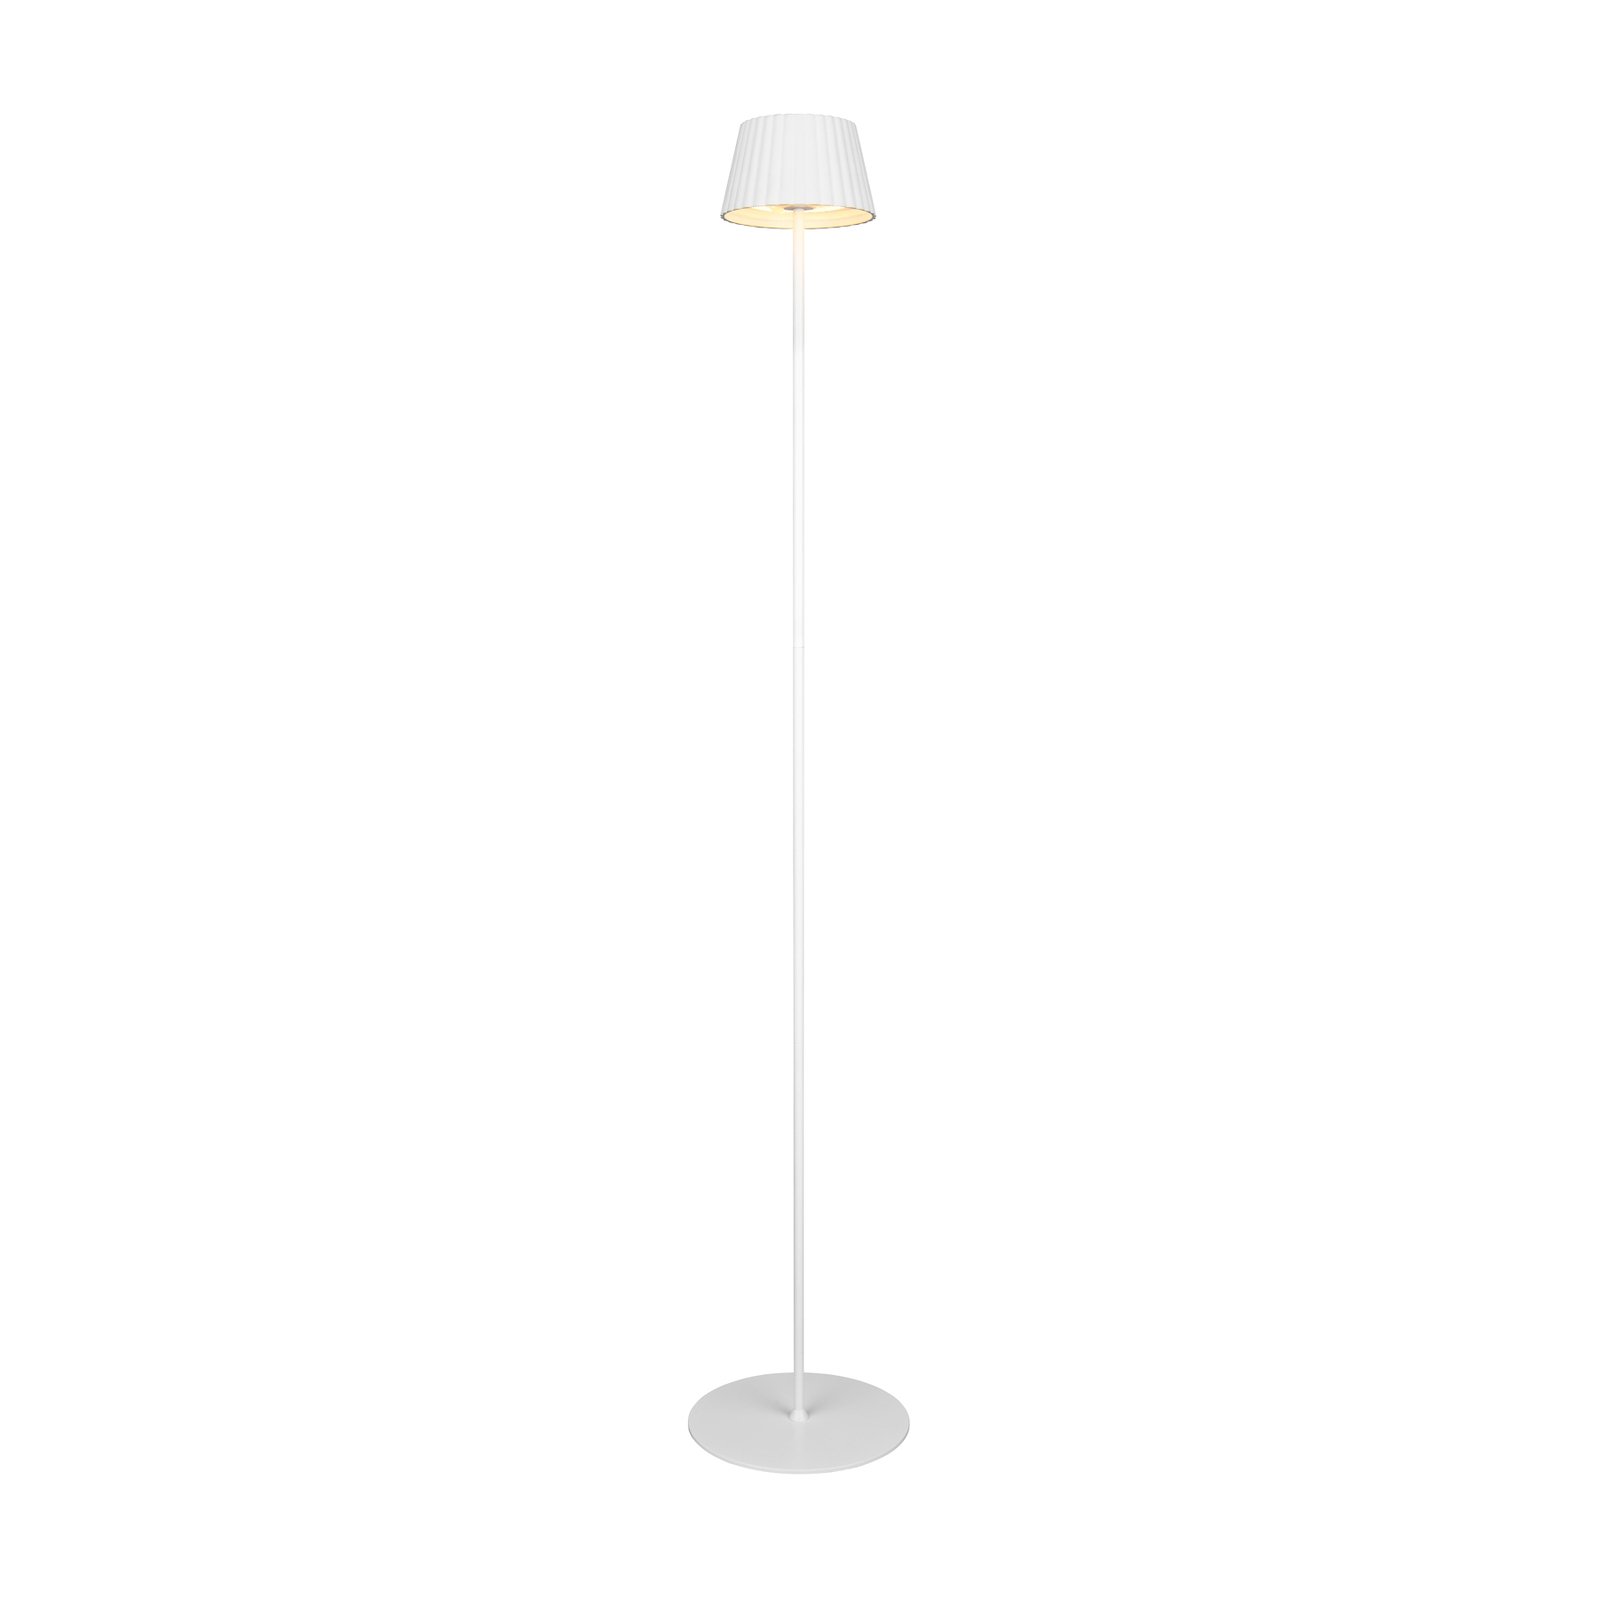 Stojacia lampa Suarez LED s dobíjaním, biela, výška 123 cm, kov